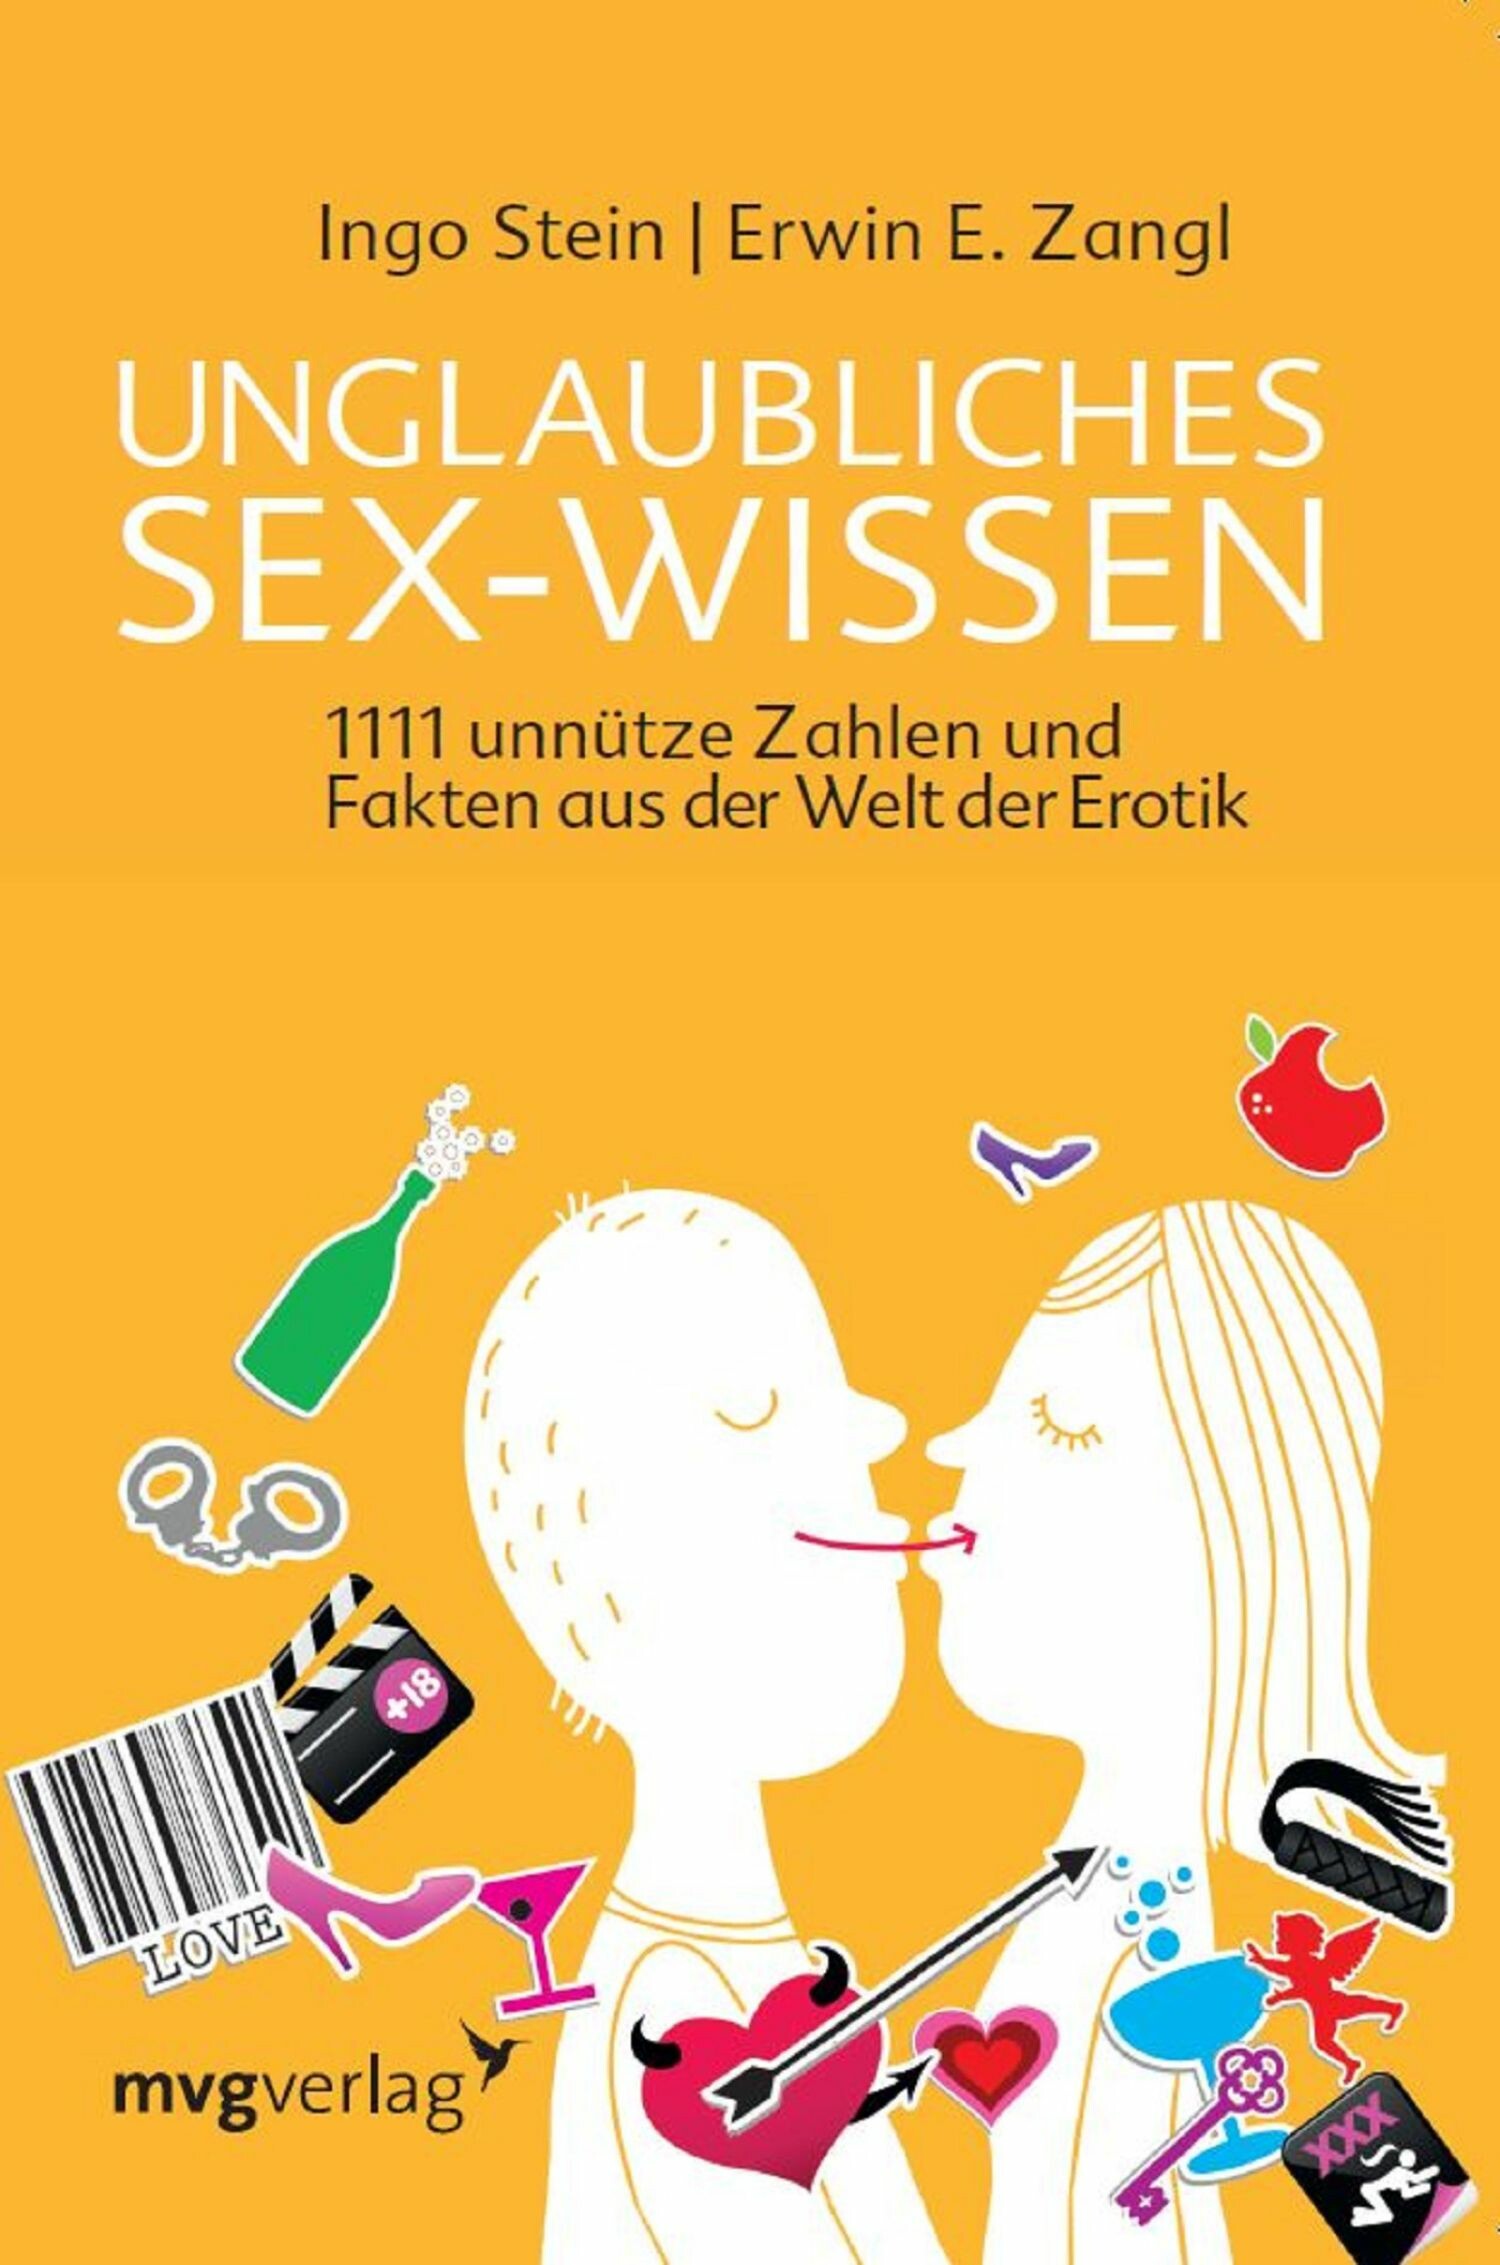 Unglaubliches Sex Wissen Epub Ebook Kaufen Ebooks Partnerschaft Beziehung Sexualität Liebe 